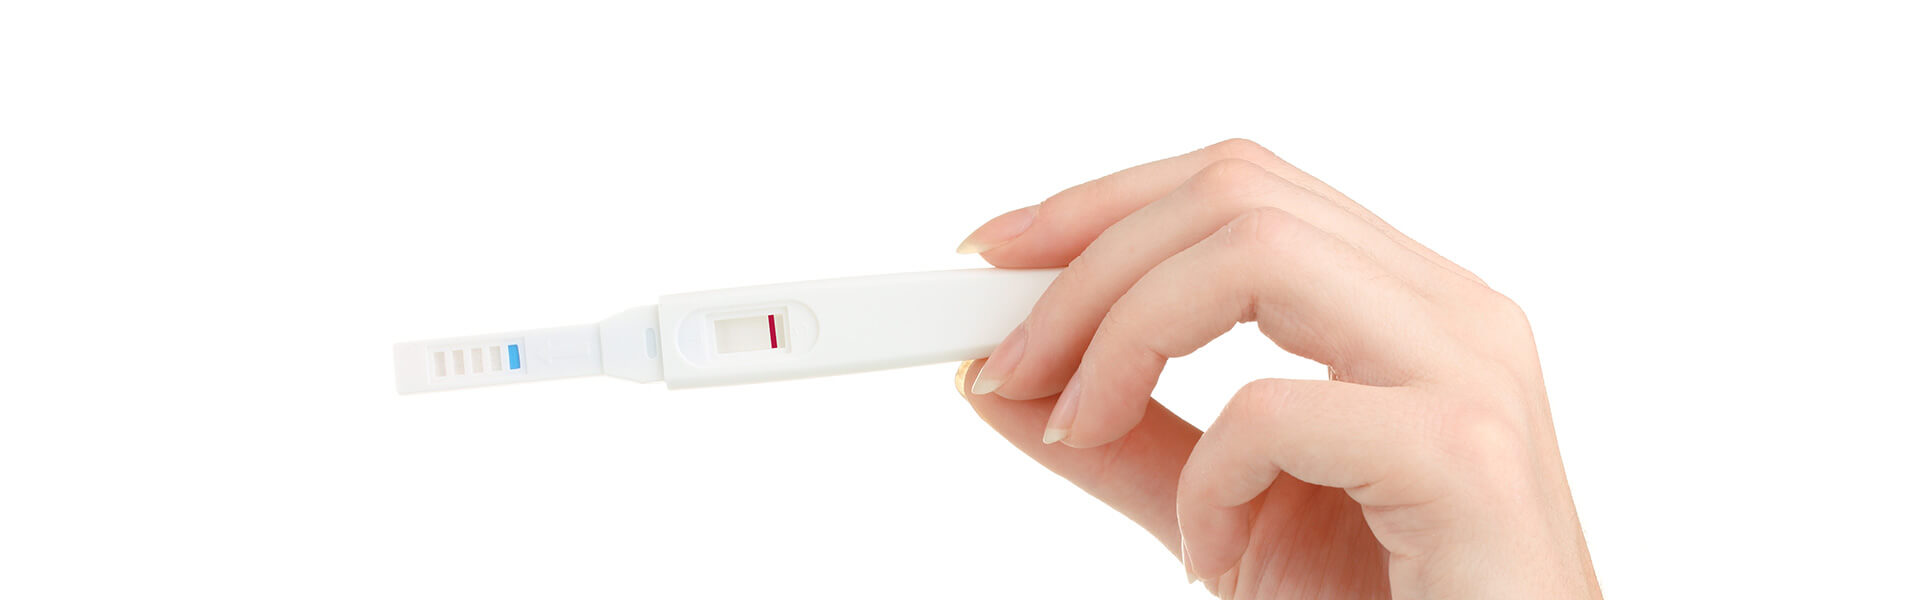 O exame de gravidez deu negativo: posso estar grávida, mesmo assim?